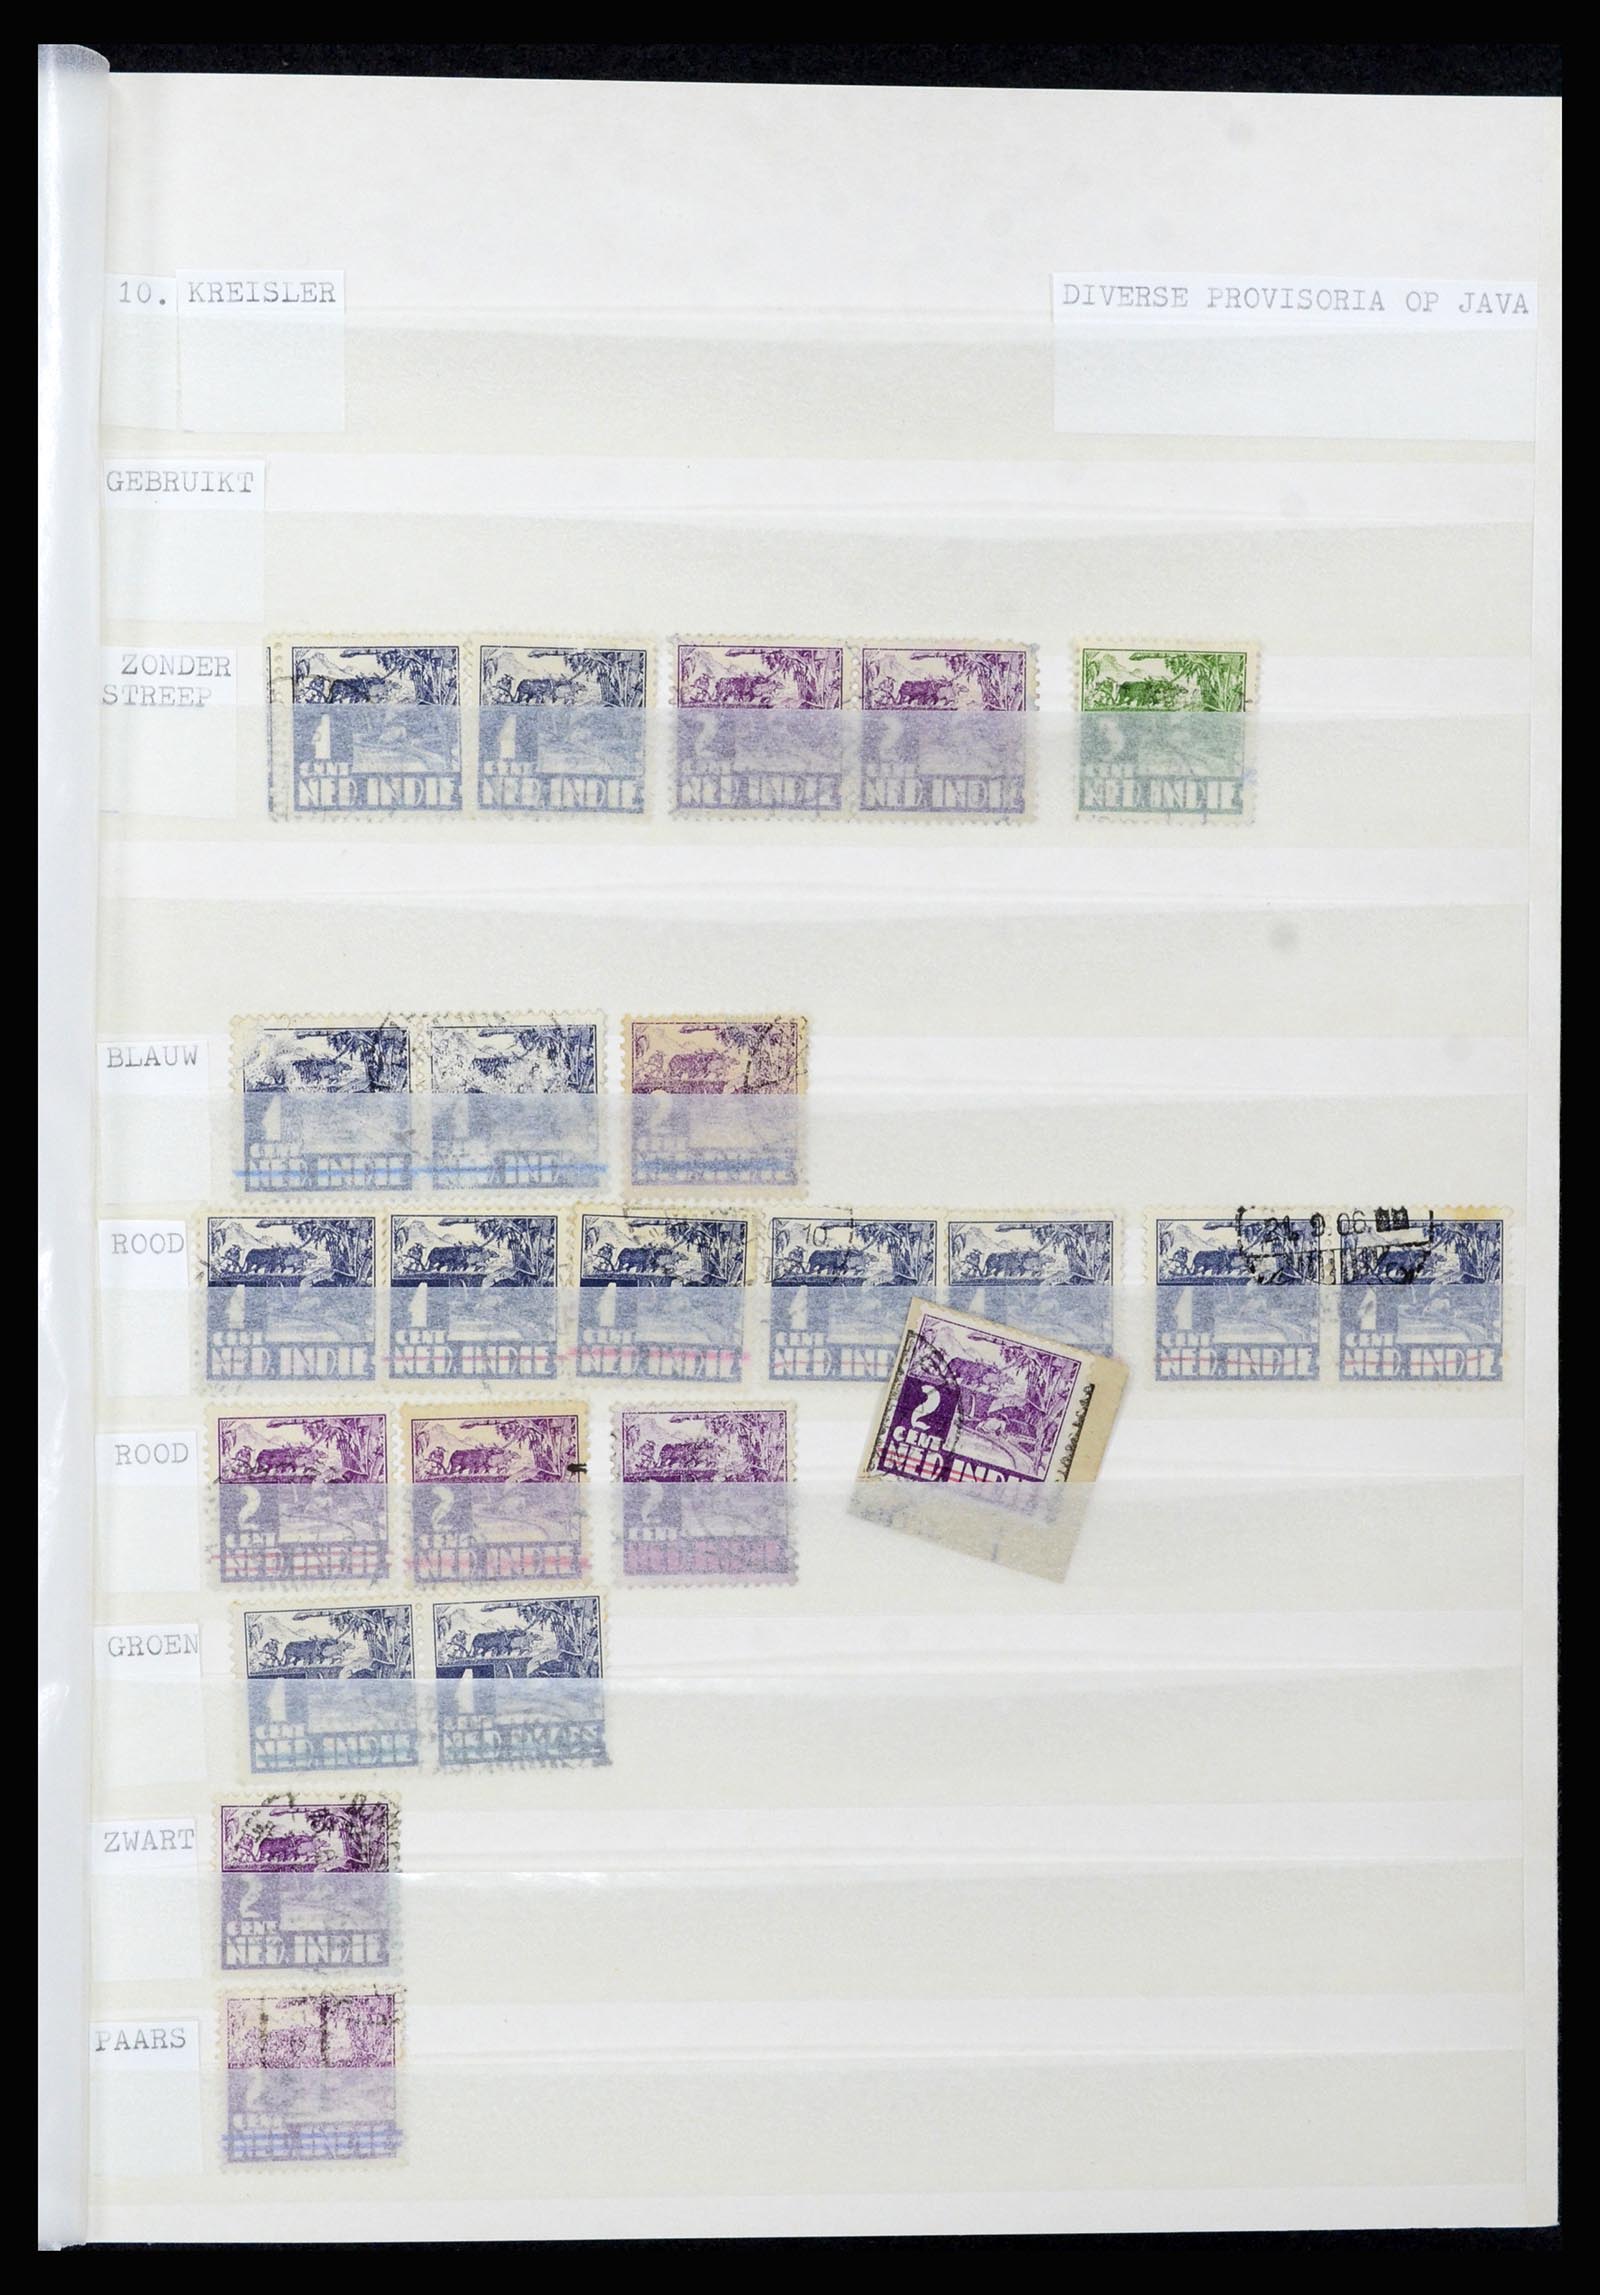 36742 007 - Stamp collection 36742 Dutch Indies interim period 1945-1949.